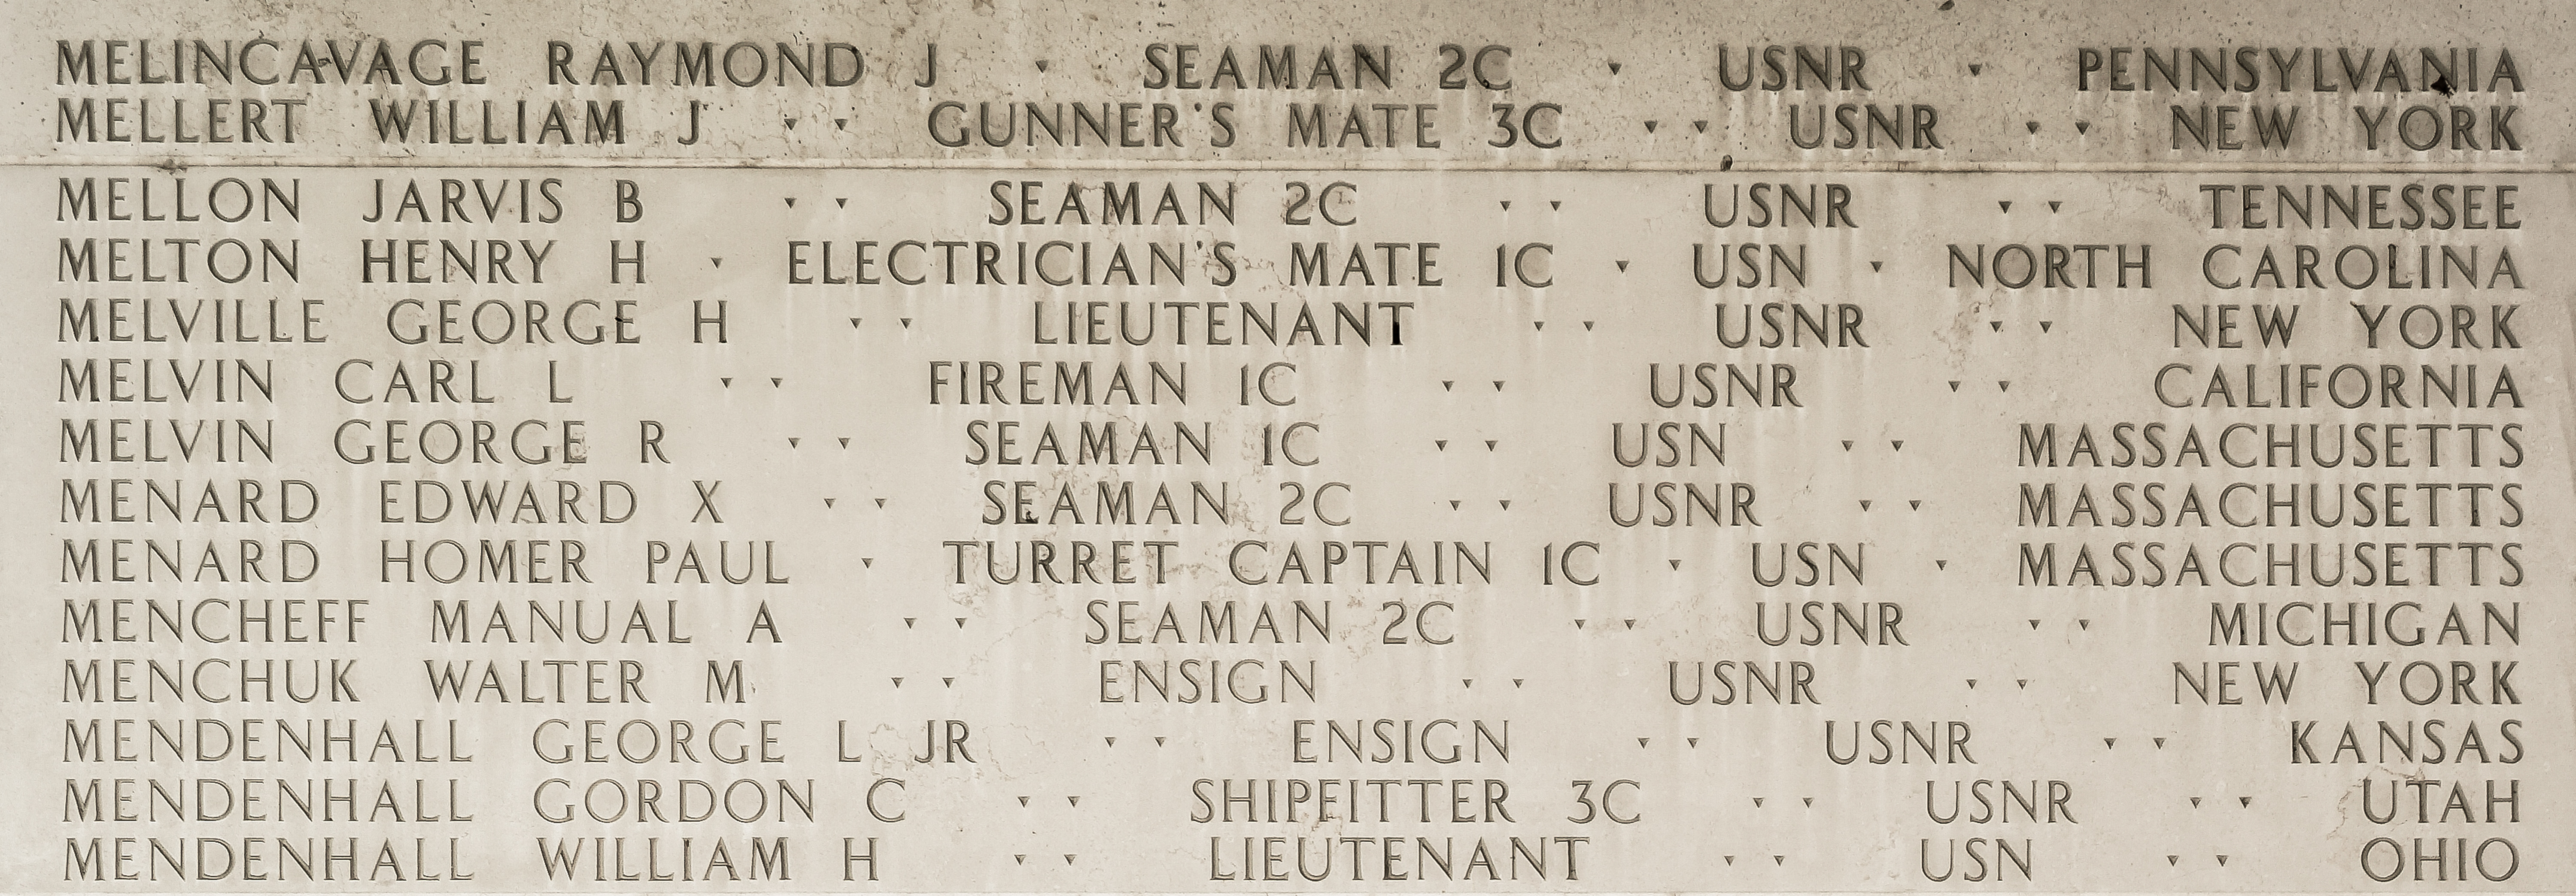 George R. Melvin, Seaman First Class